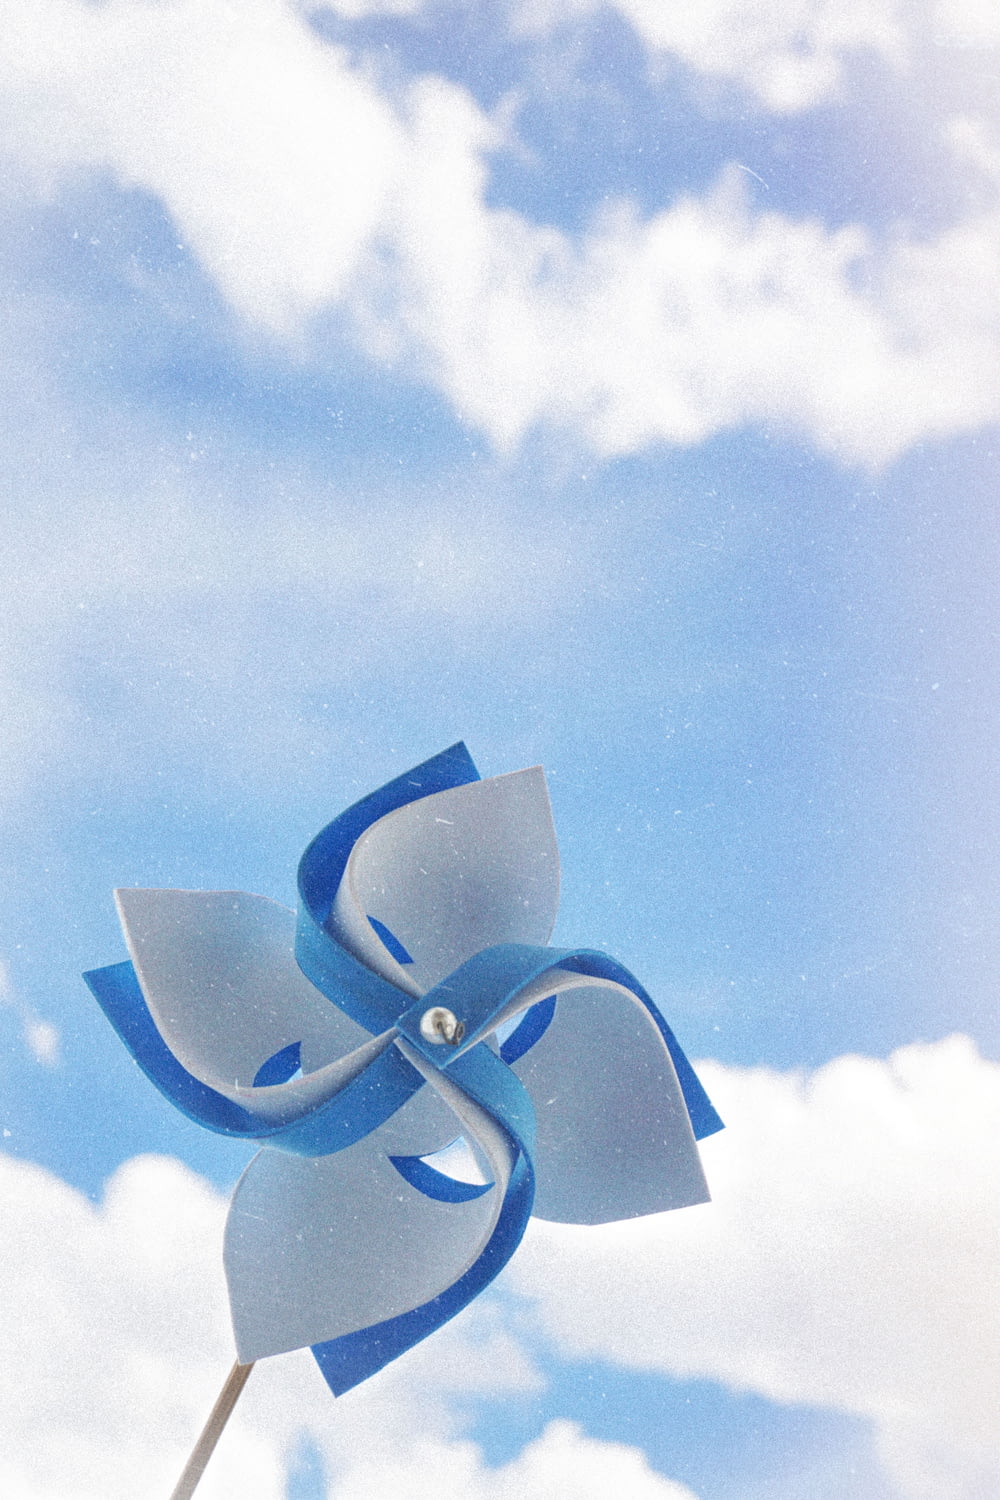 曇り空の下の白と青の手持ち式風車